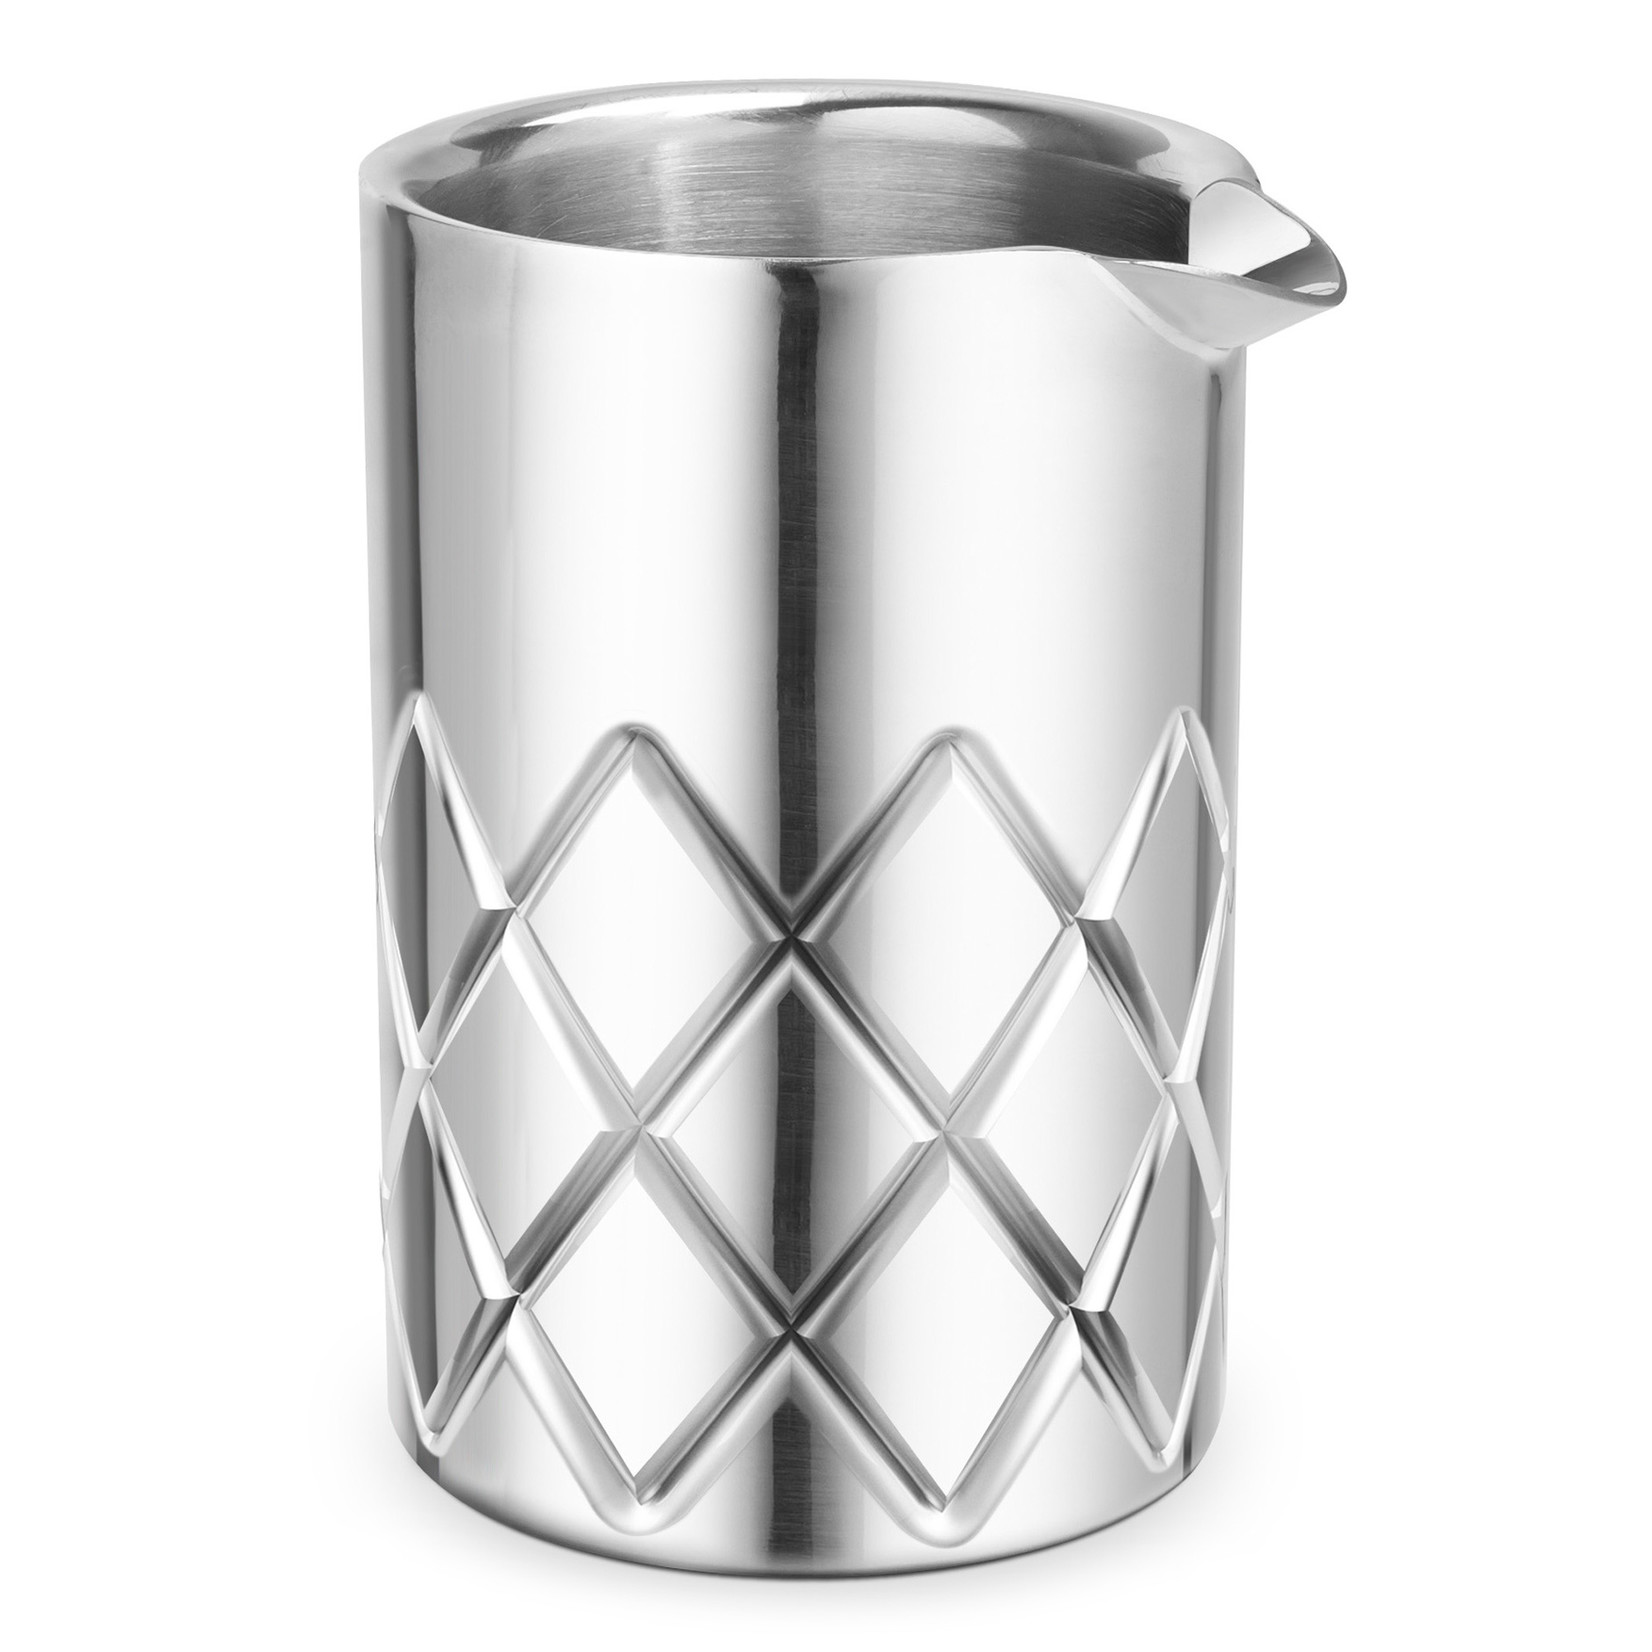 https://cdn.shoplightspeed.com/shops/647991/files/39538147/1652x1652x1/final-touch-yarai-mixing-pitcher-stainless-steel.jpg